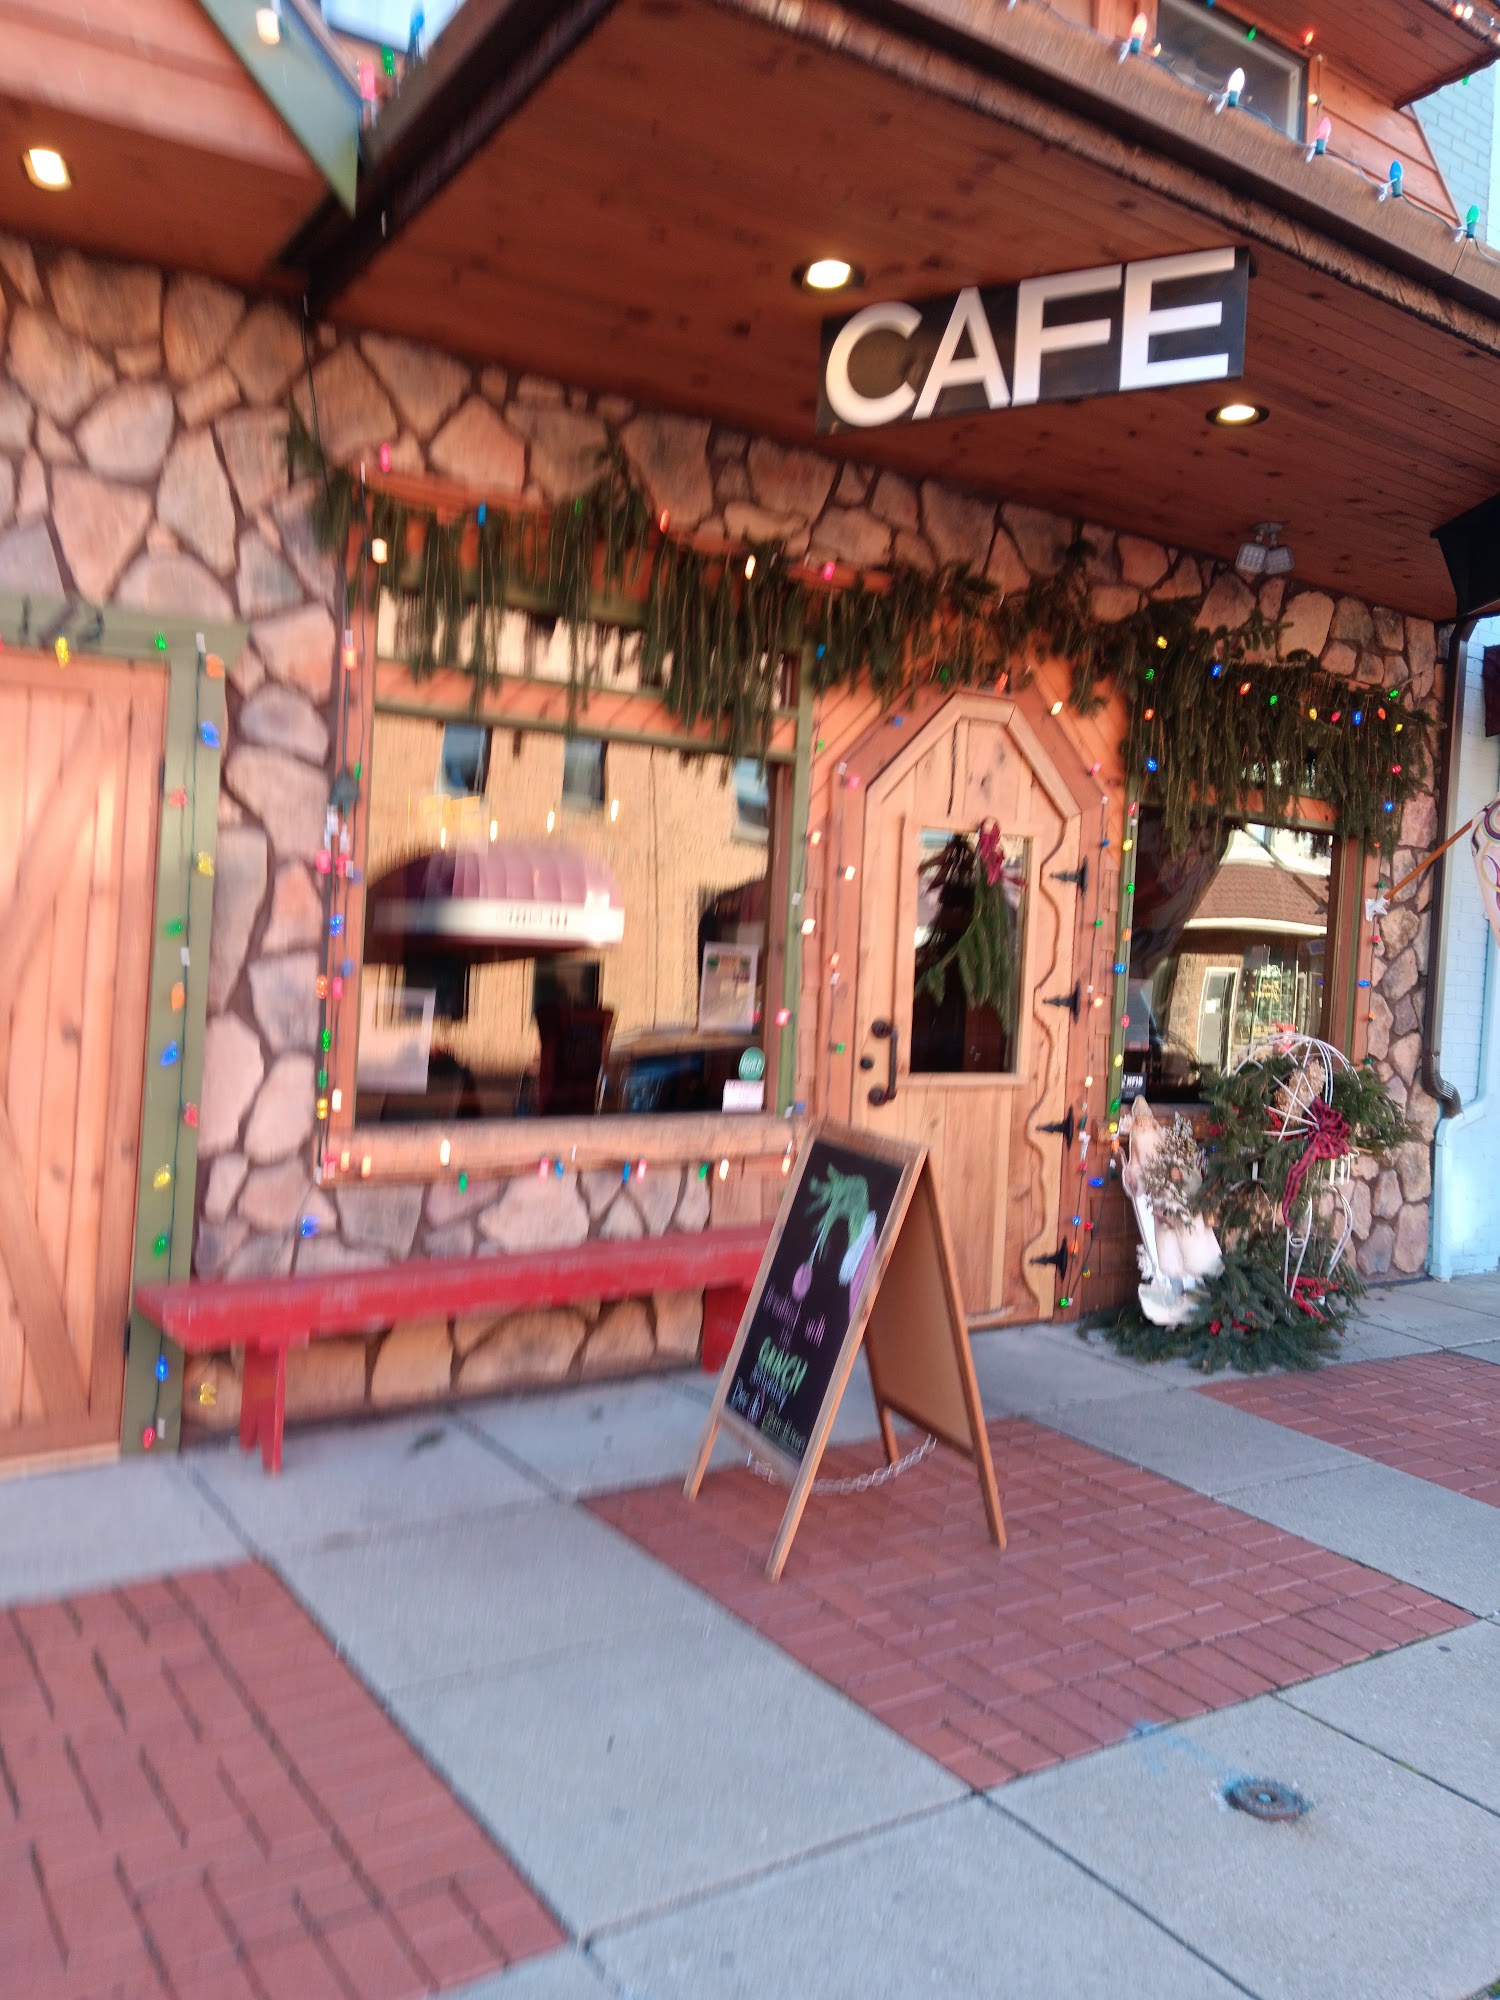 Walker's Cafe